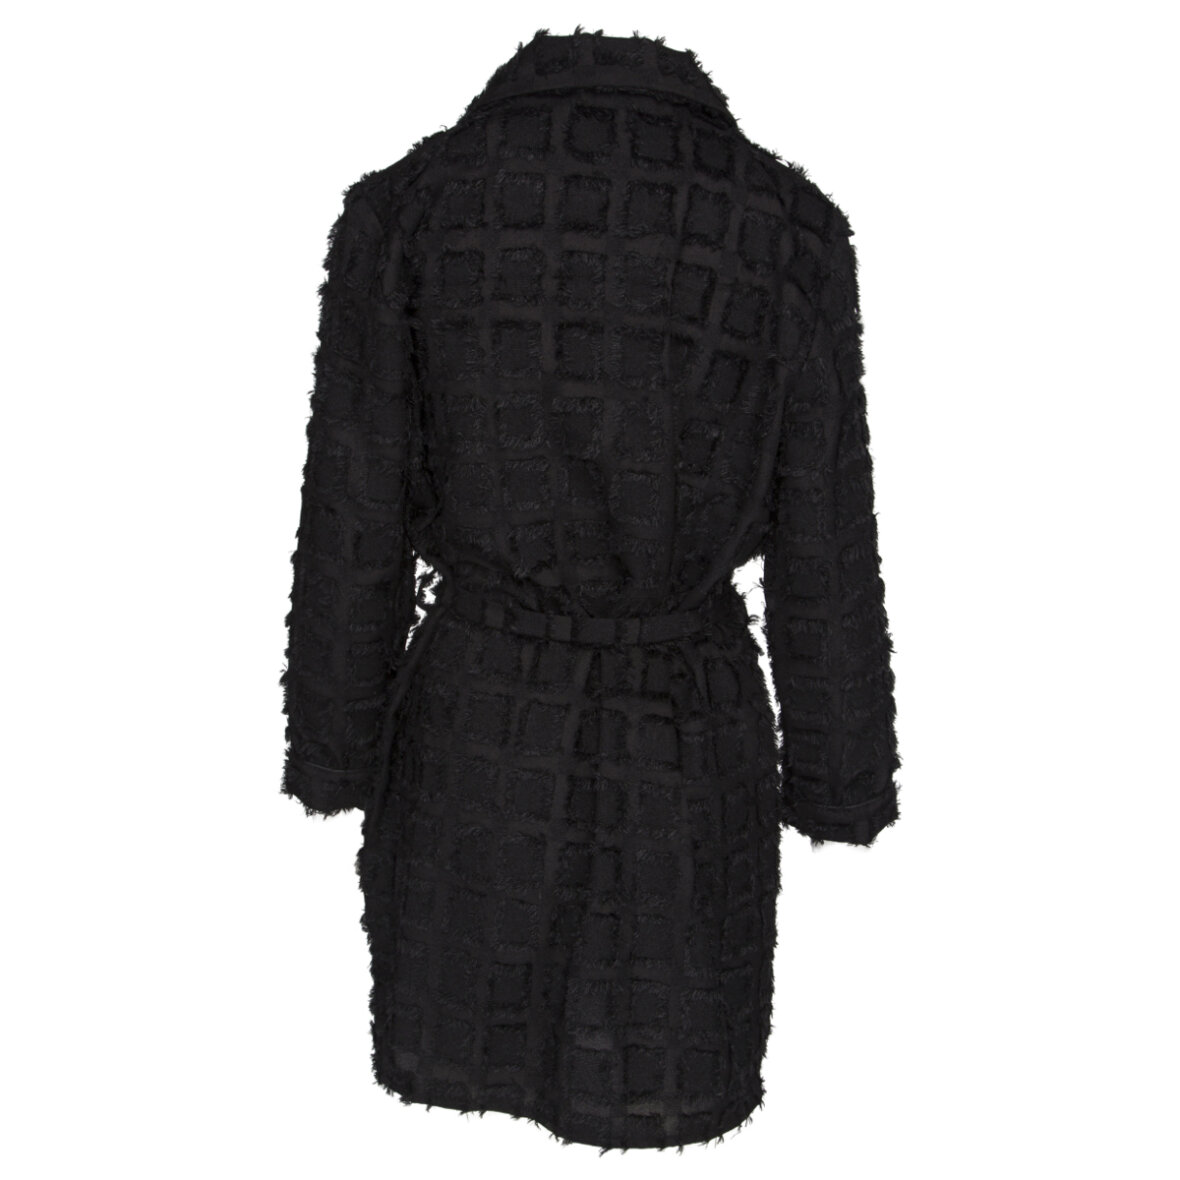 Lav aftensmad at opfinde Bedre Fine Cph Plus Fine Skyros Kimono Coat - Shop online nu